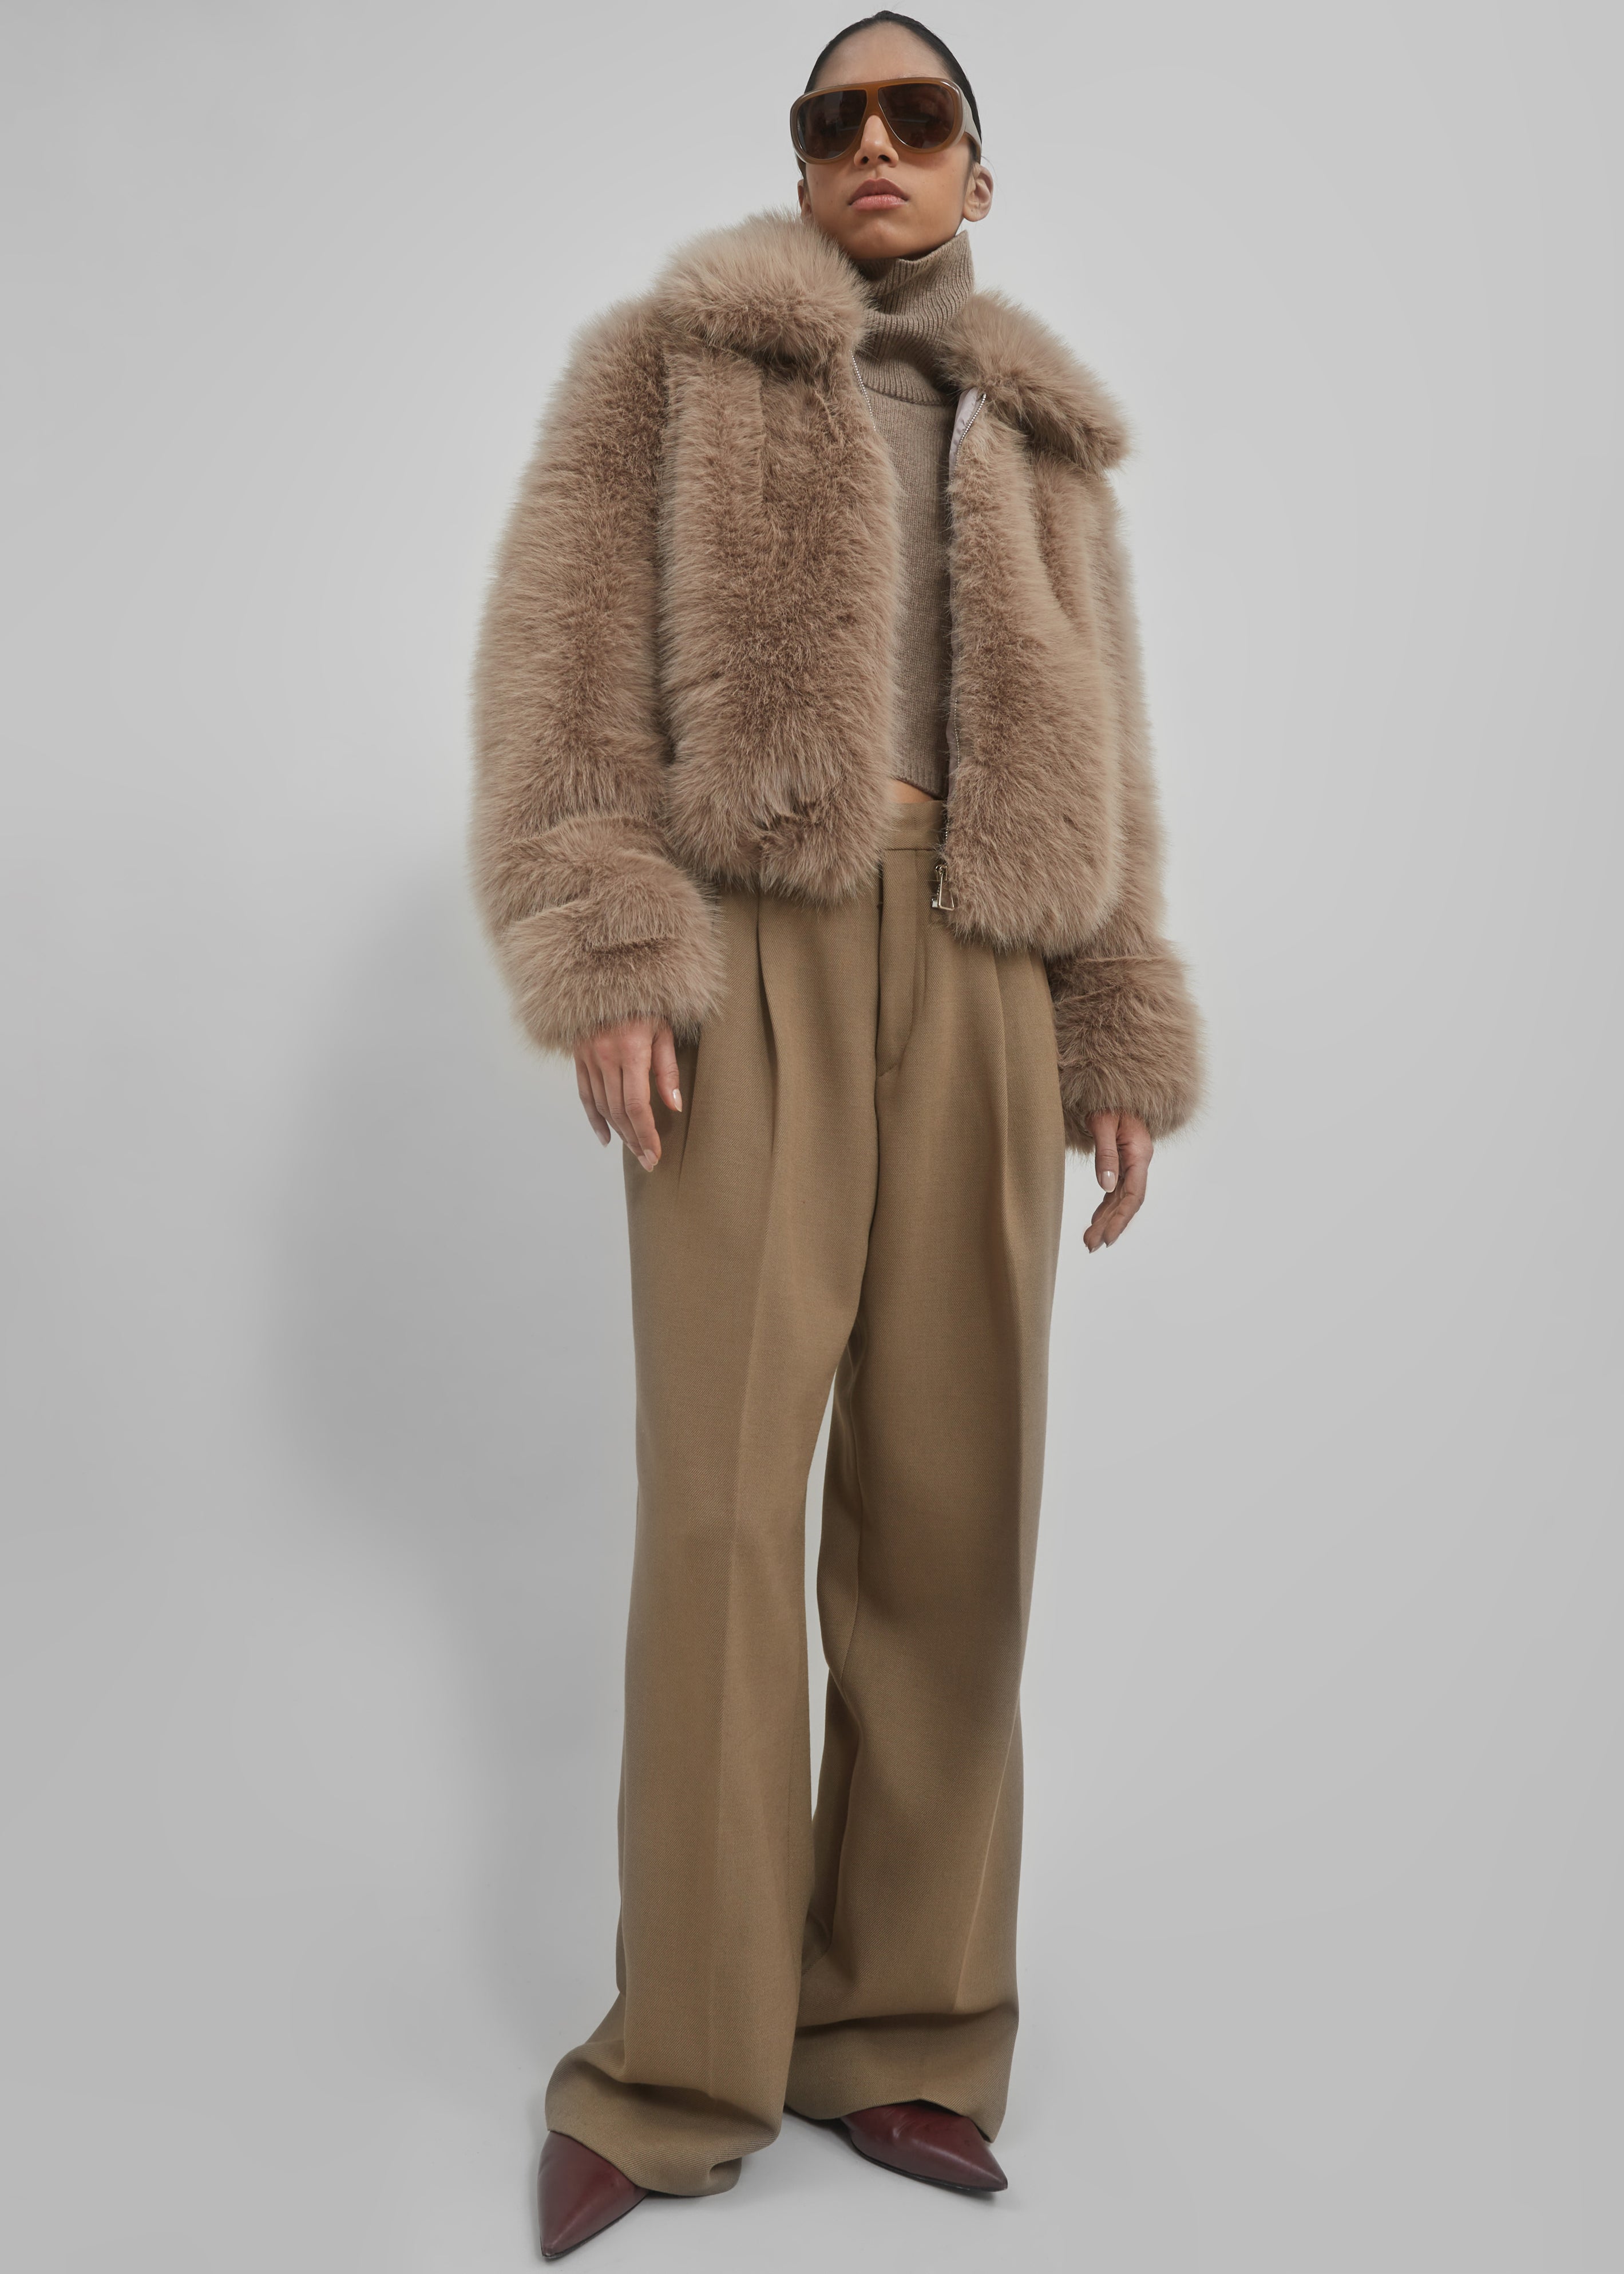 Women's Frankie Faux Fur Lined Parka Jacket in Khaki